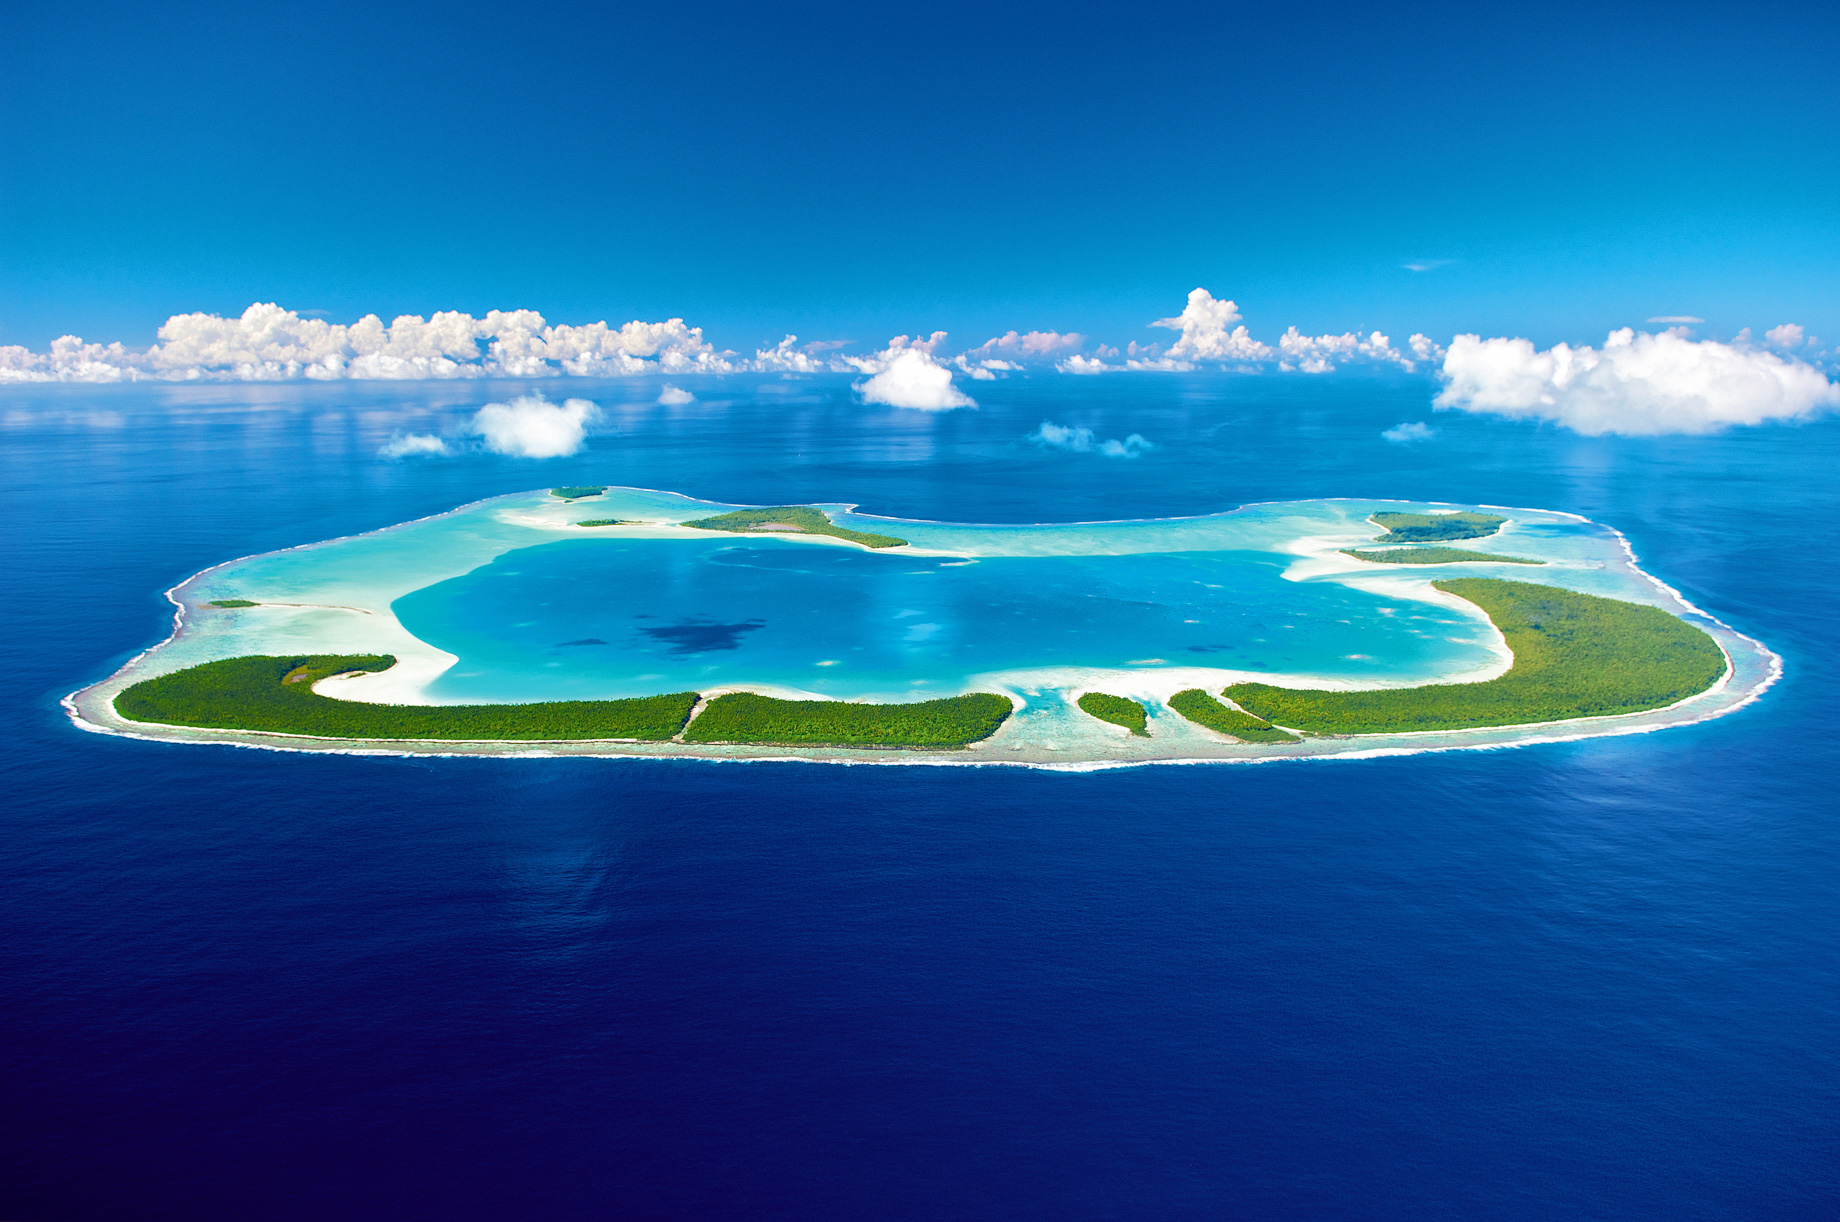 The Brando Resort - Tetiaroa Private Island, French Polynesia